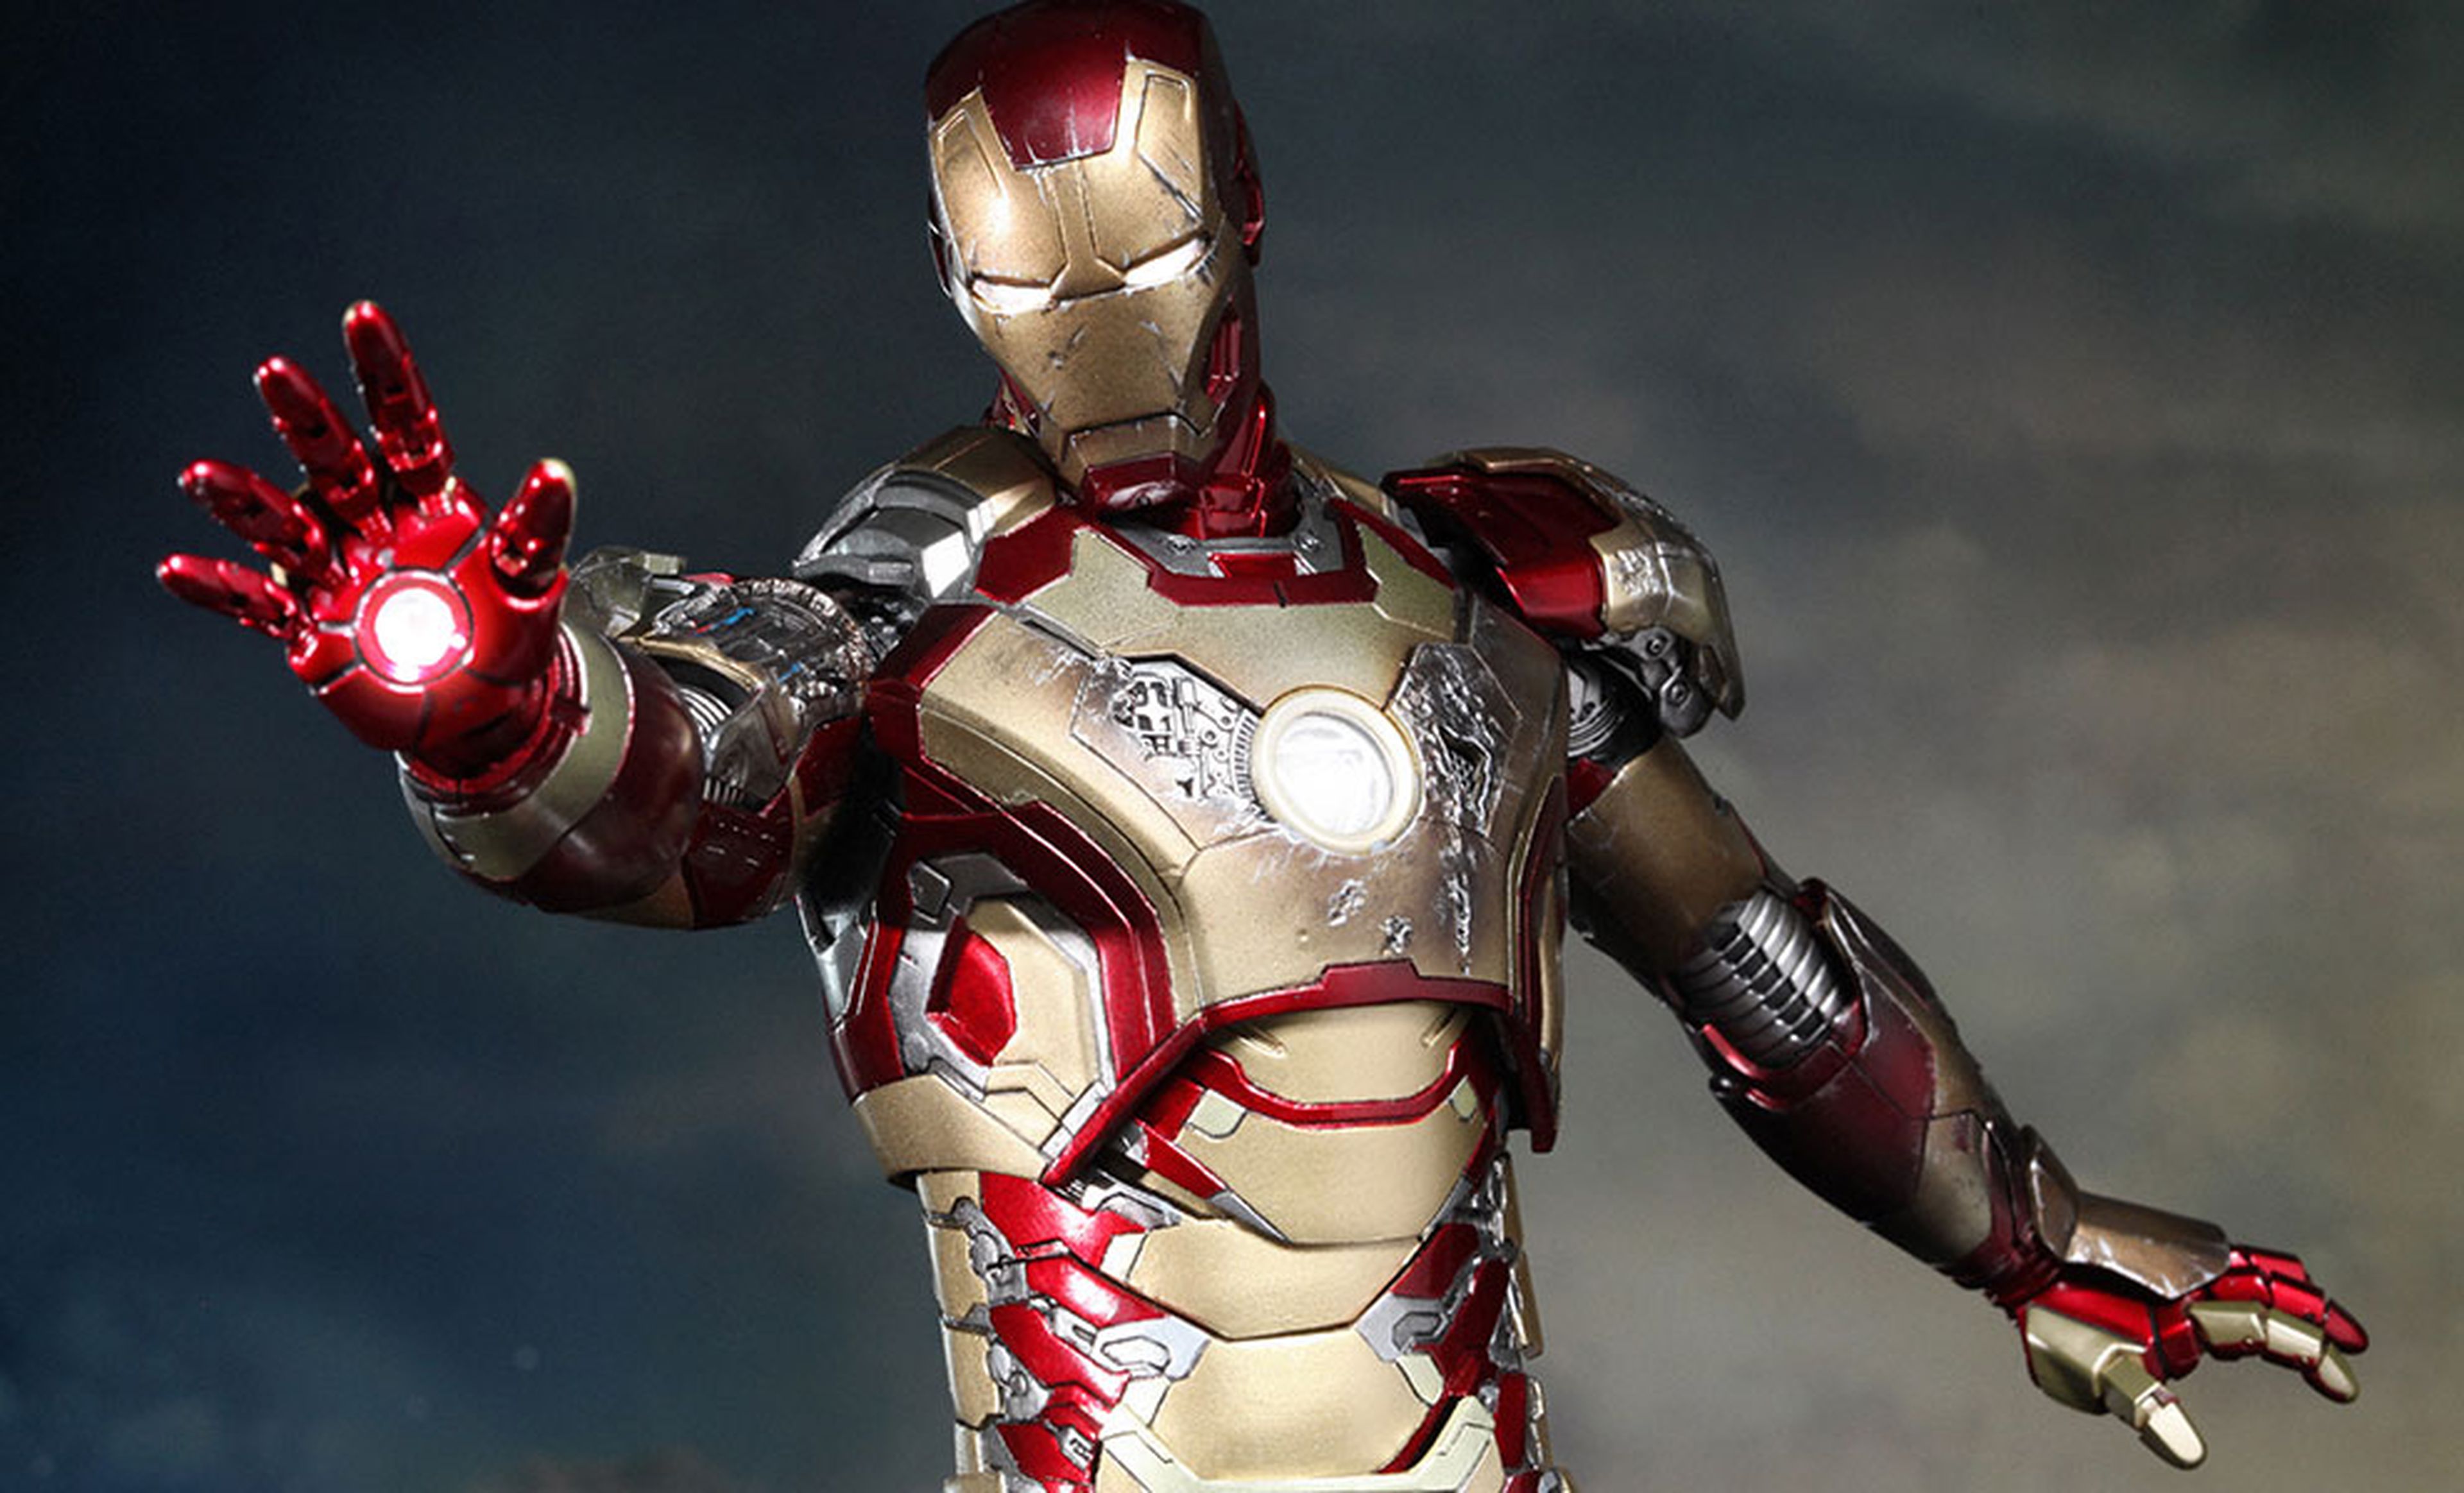 Iron Man Mark XLII - Iron Man 3 (2013)